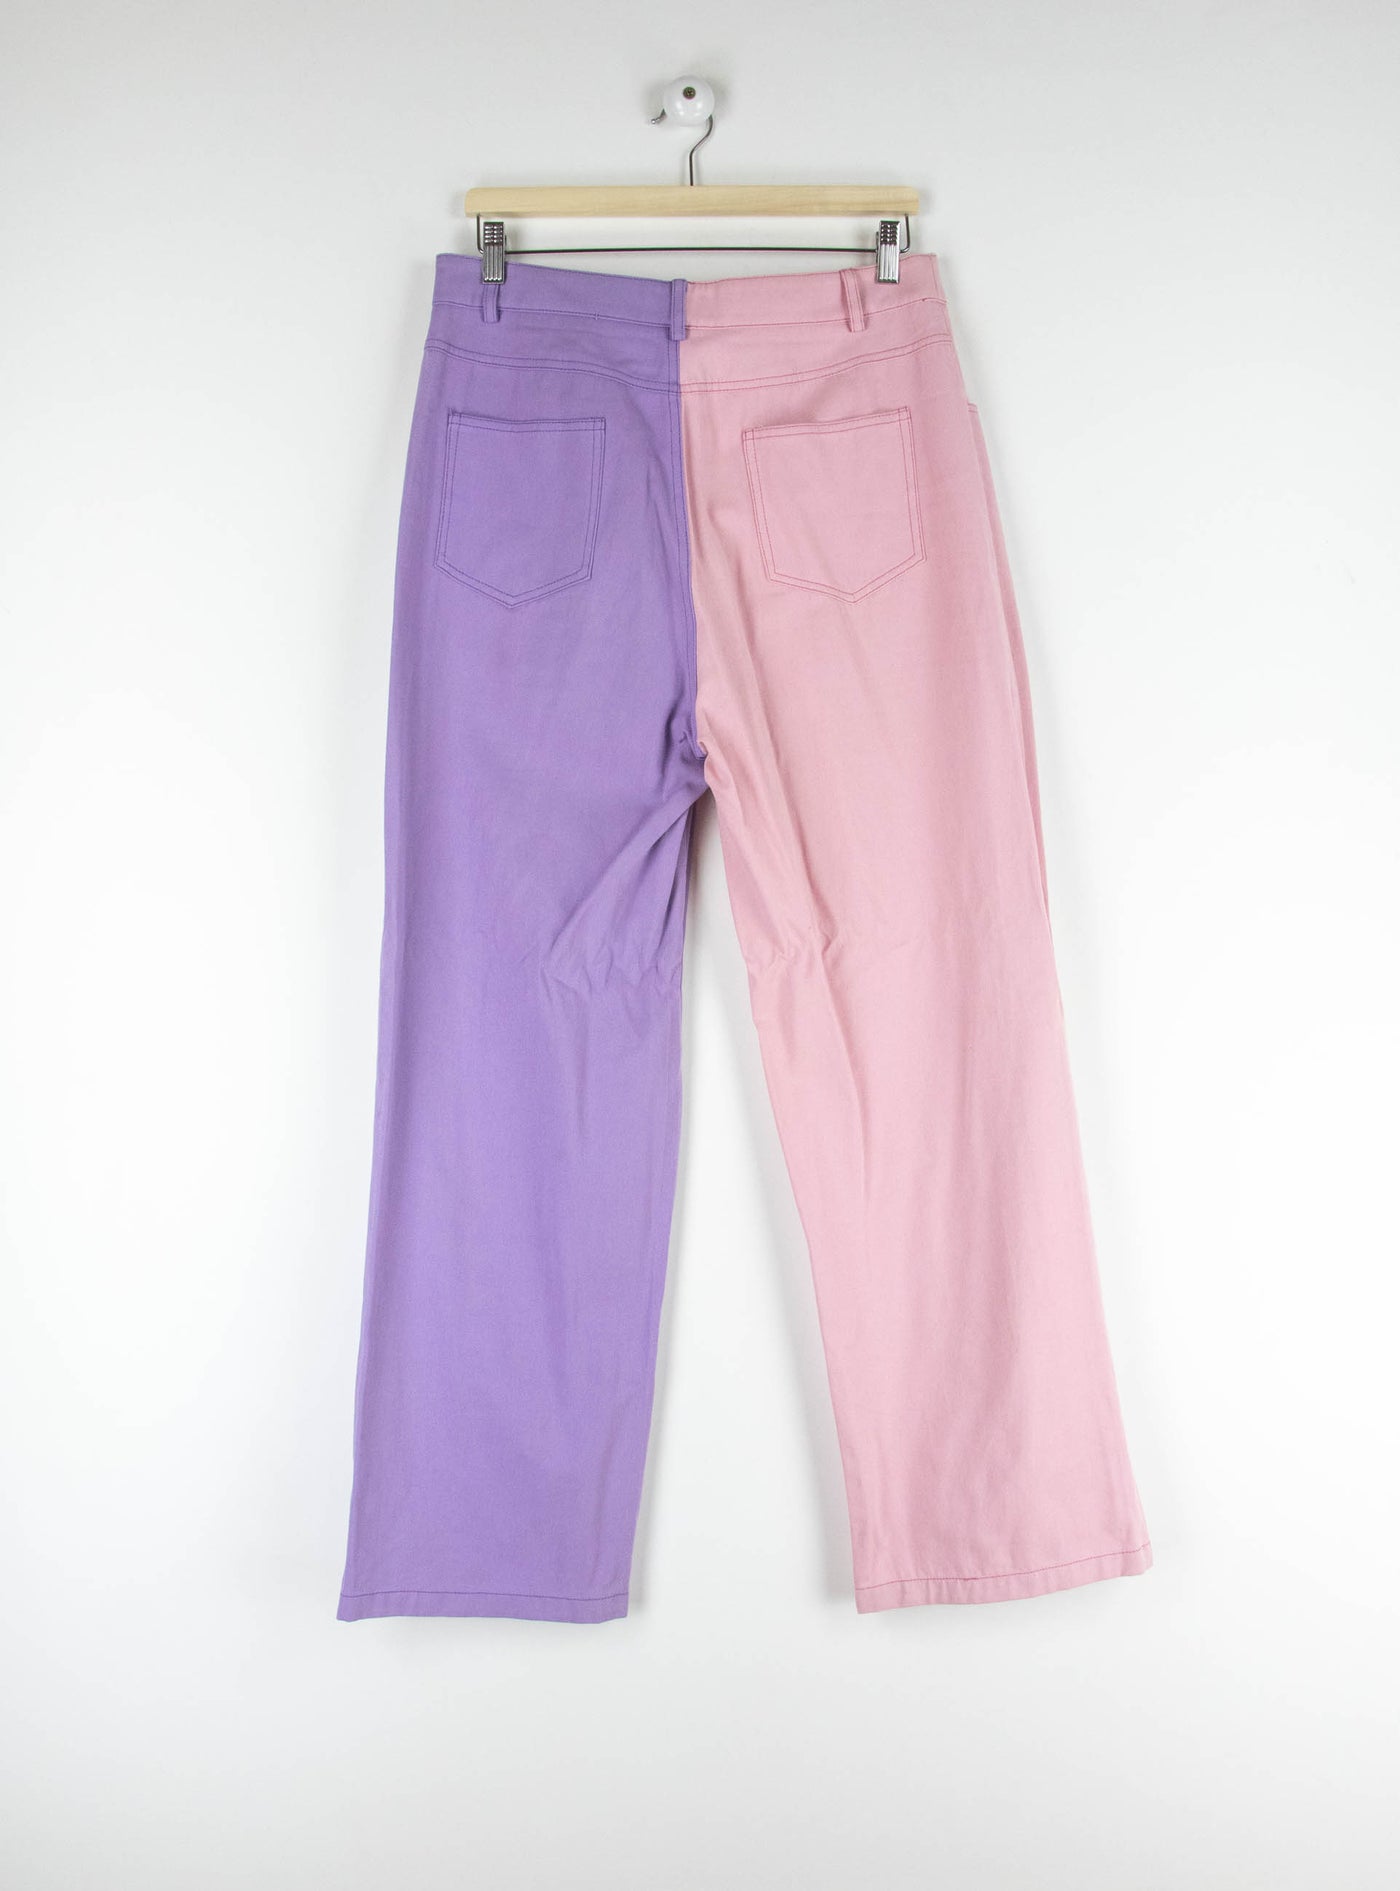 Pantalón vaquero dos colores morado/rosa